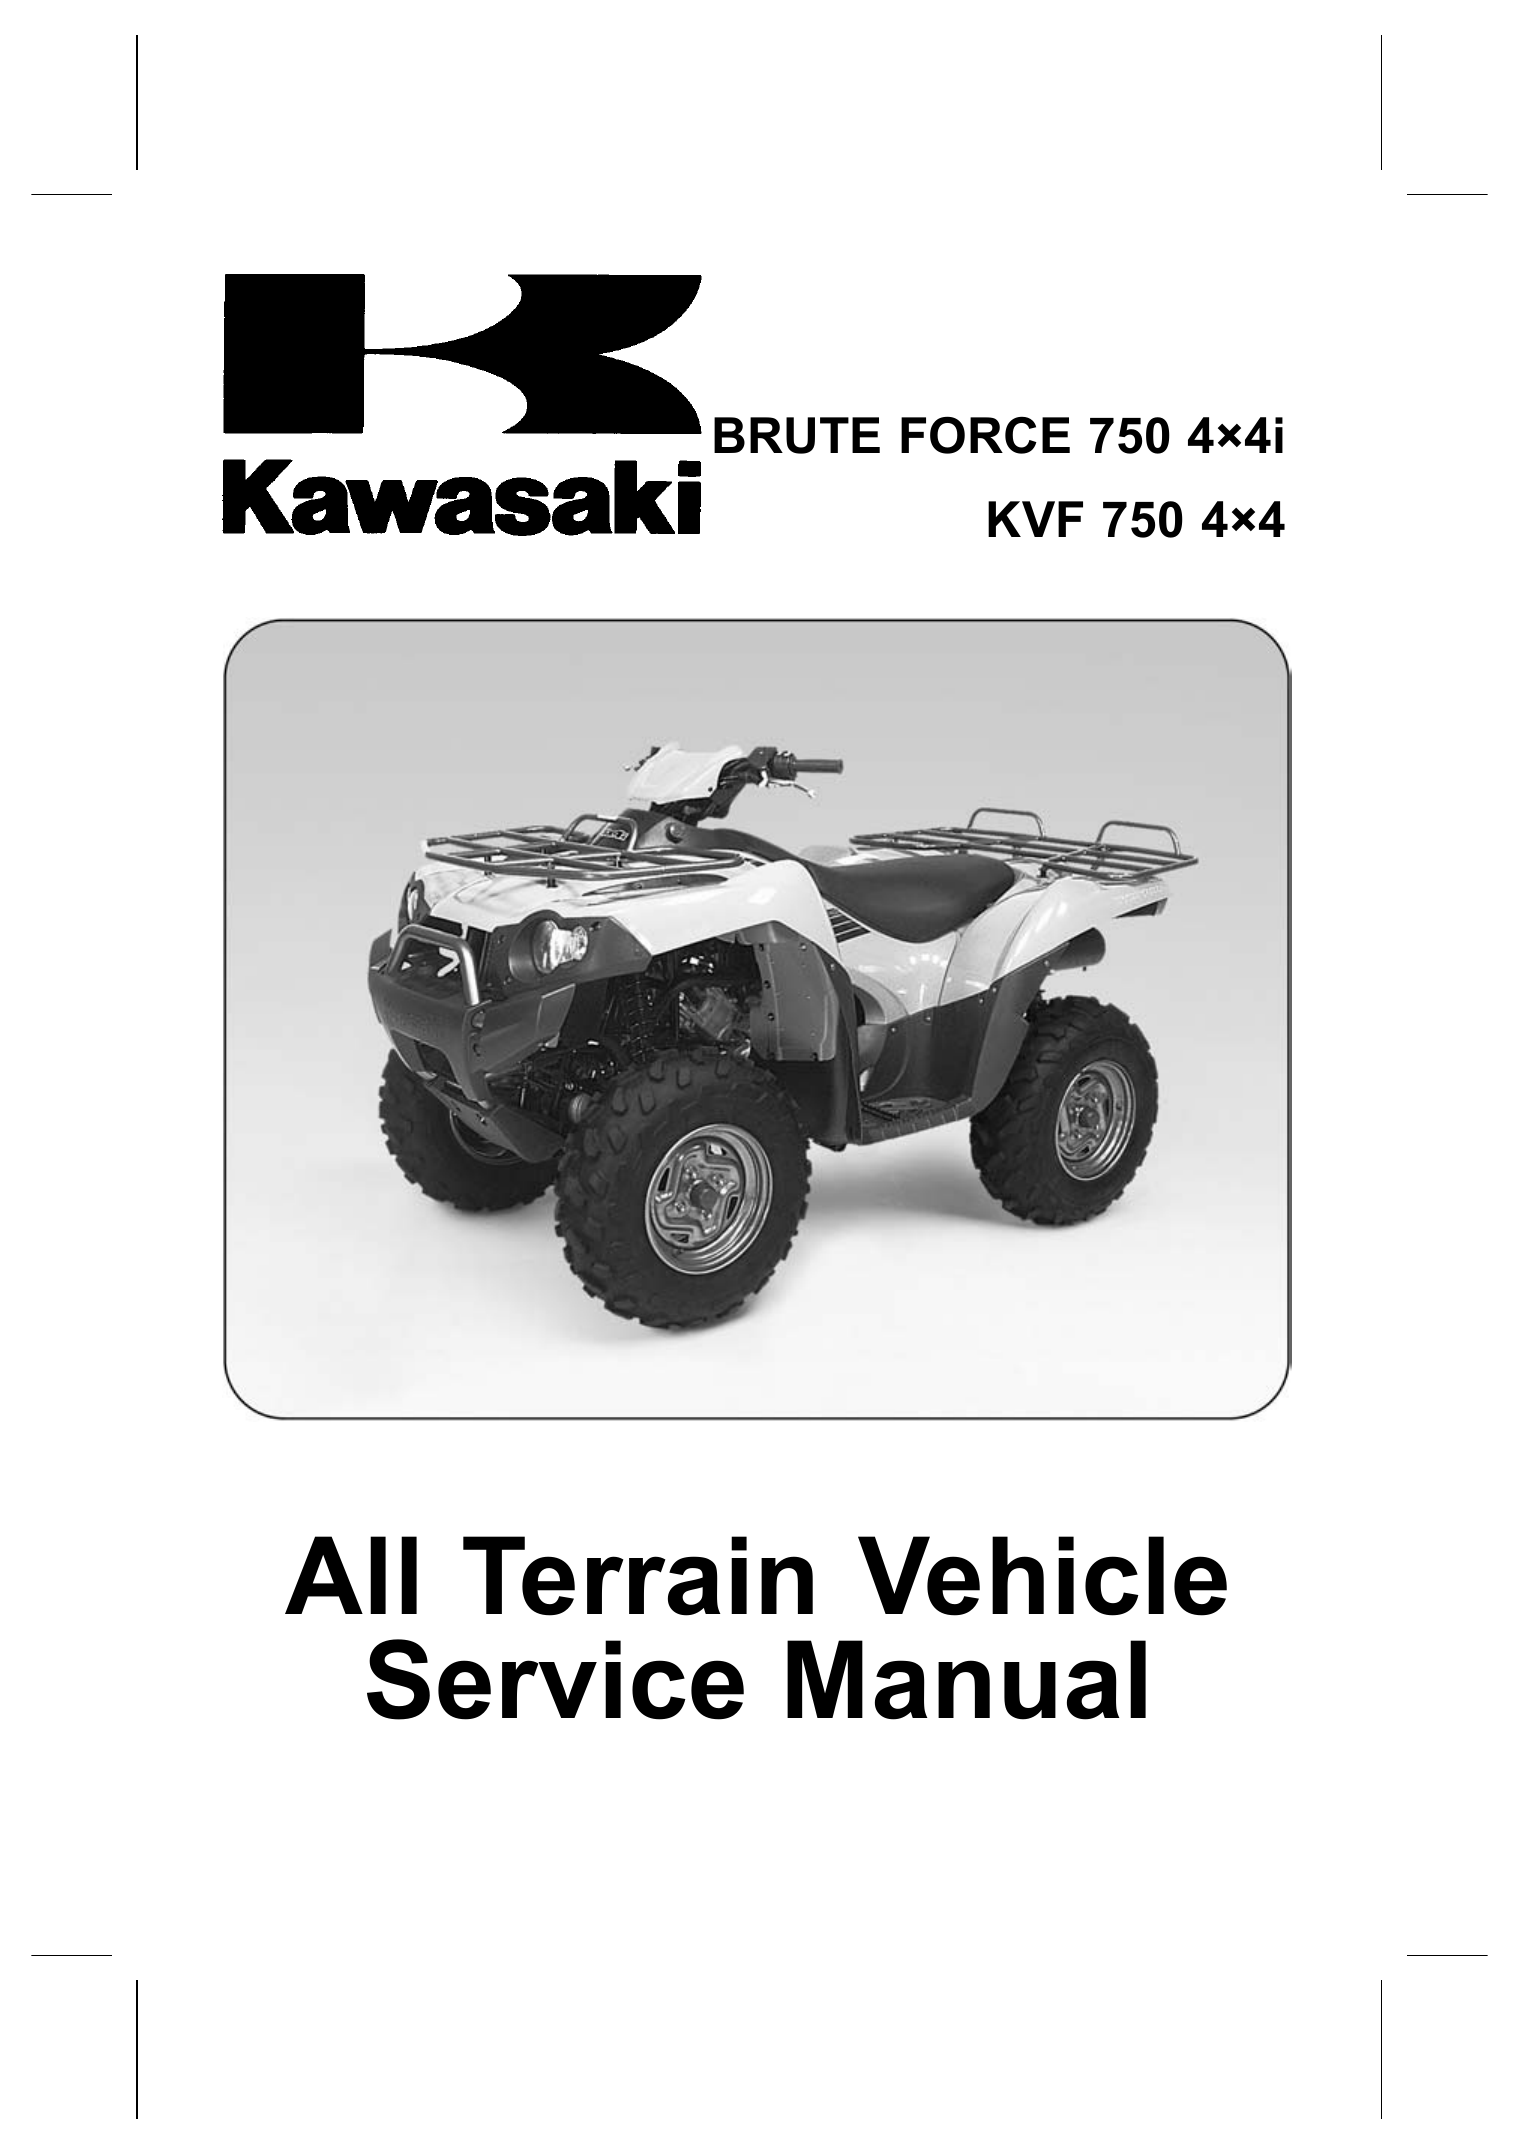 2005-2007 Kawasaki Brute Force 750, KVF750 4x4i repair manual Preview image 1